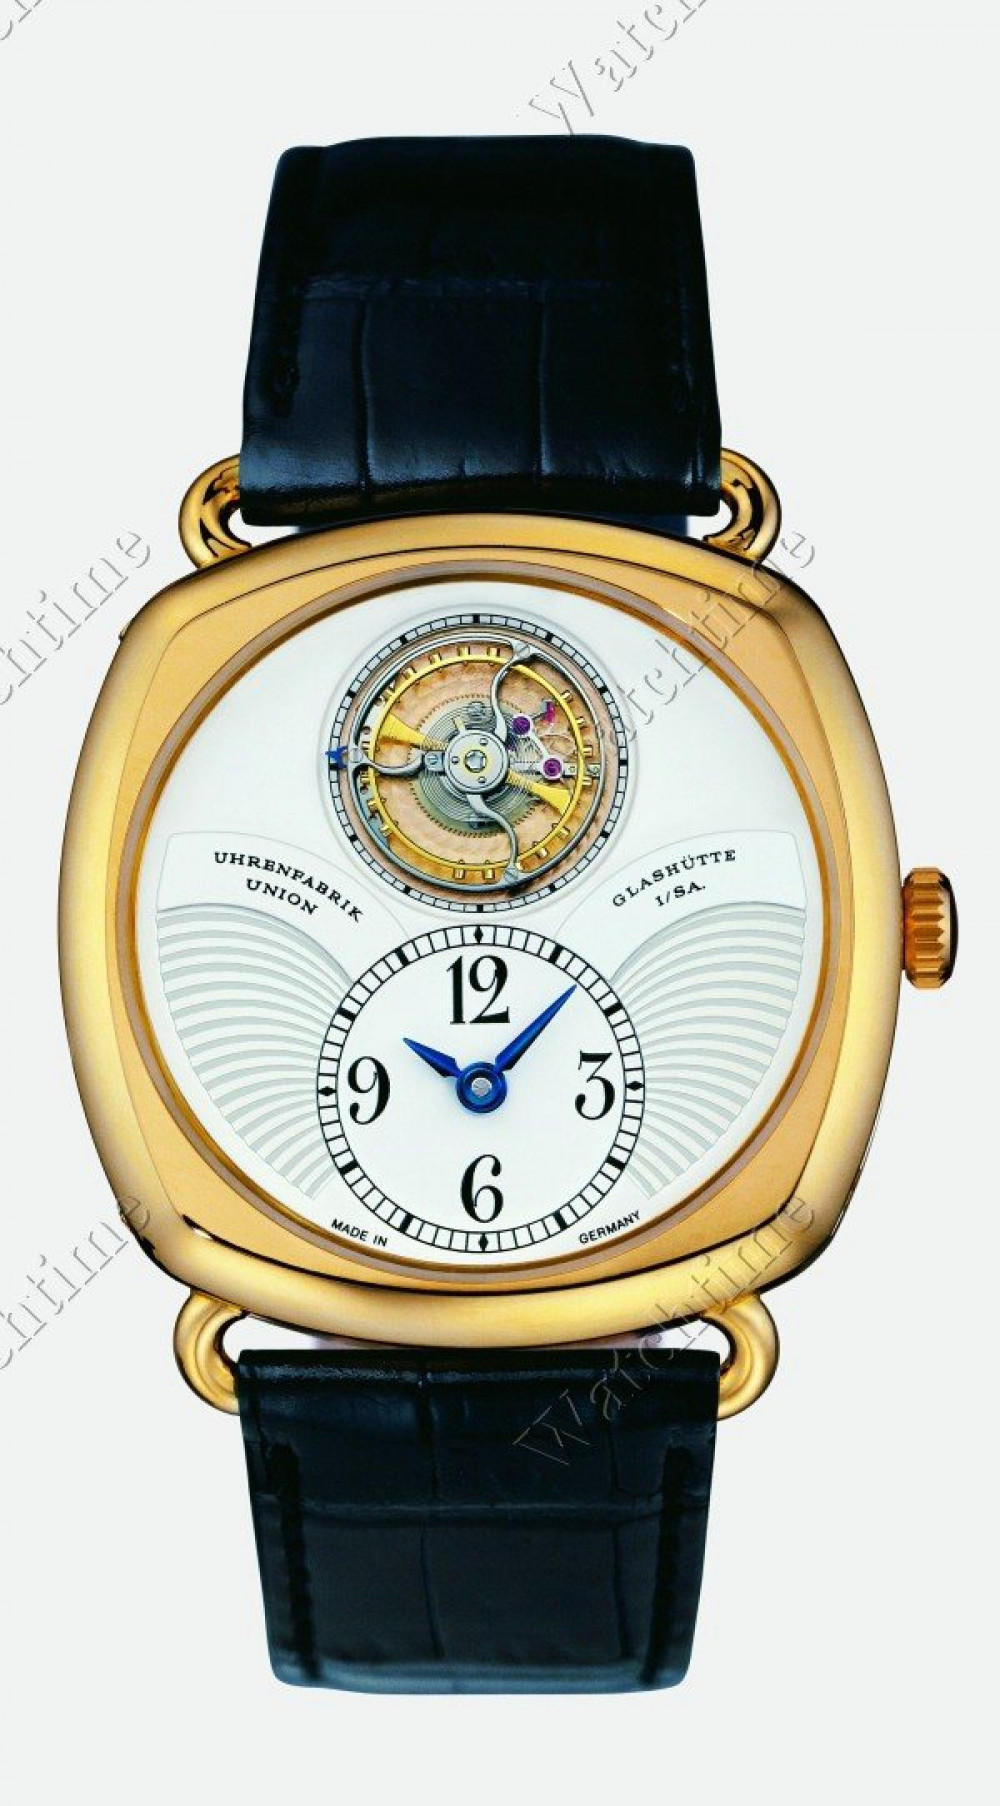 Zegarek firmy Union Glashütte, model Johannes Dürrstein 3